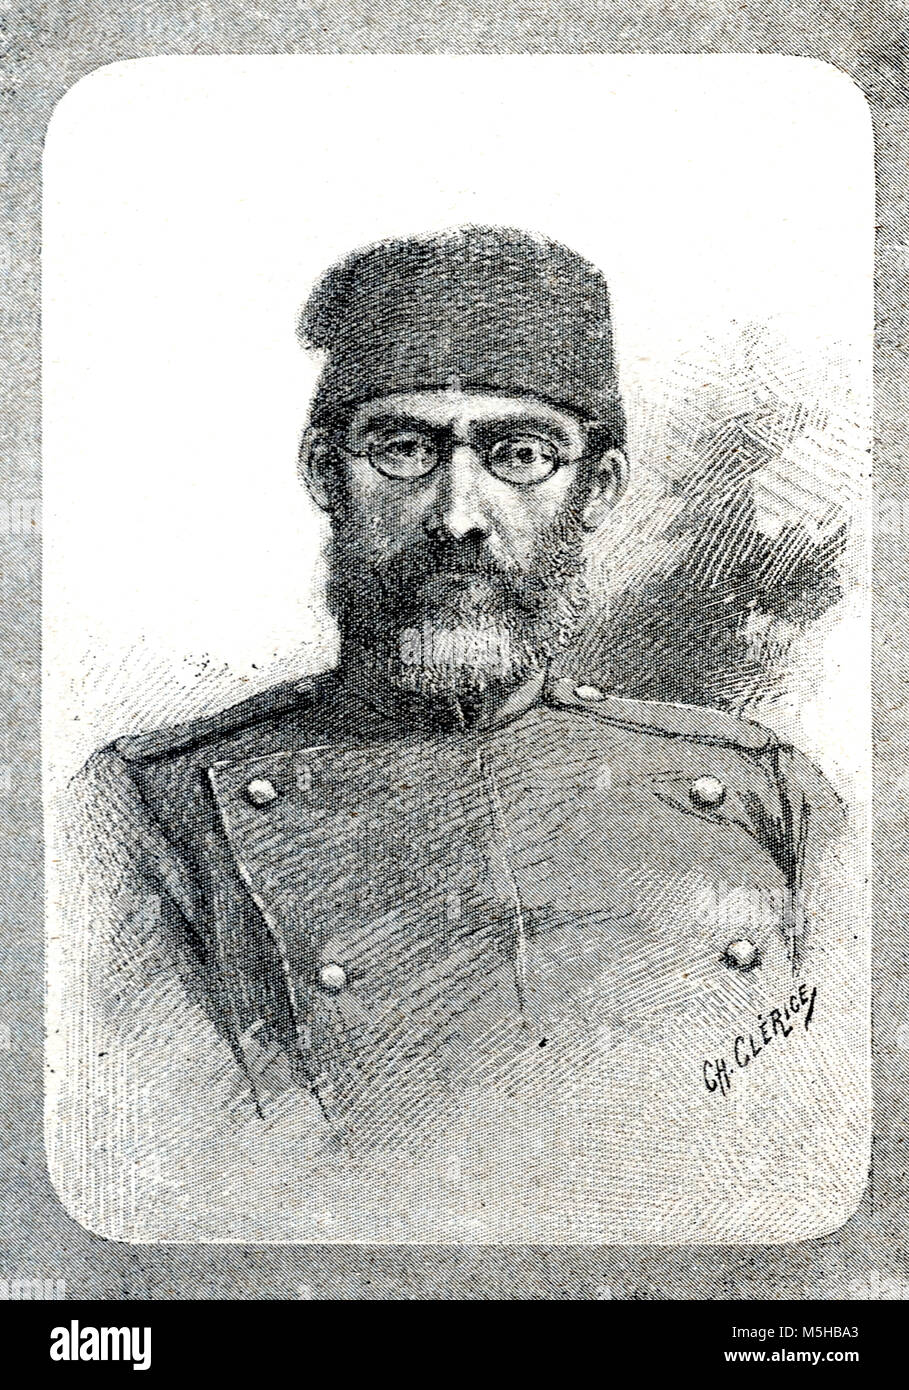 Portrait d'Emin Pasha, alias Mehmed Emin Pacha (1840-1892) Explorateur de l'Afrique, Médecin Ottoman d'origine juive allemande, naturaliste et Gouverneur de la province égyptienne d'Équatoria (gravure, 1889) Banque D'Images